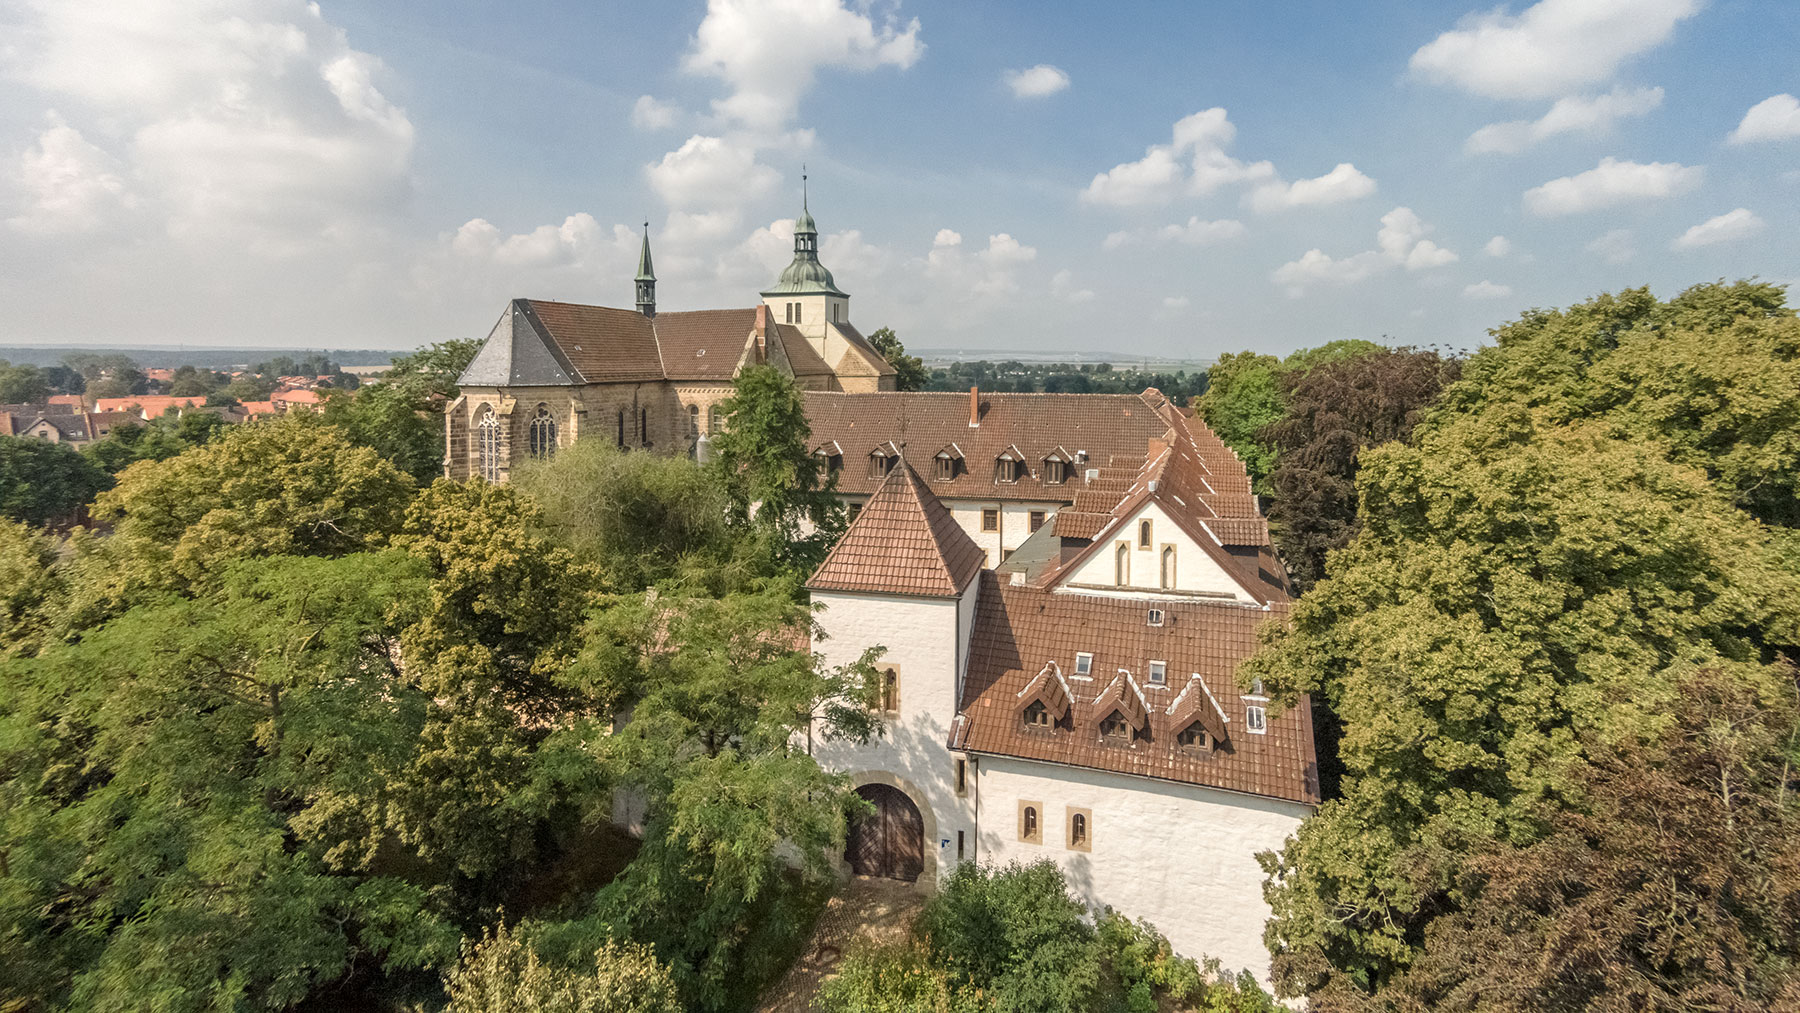 Luftbild Torhaus Kloster St. Marienberg Helmstedt